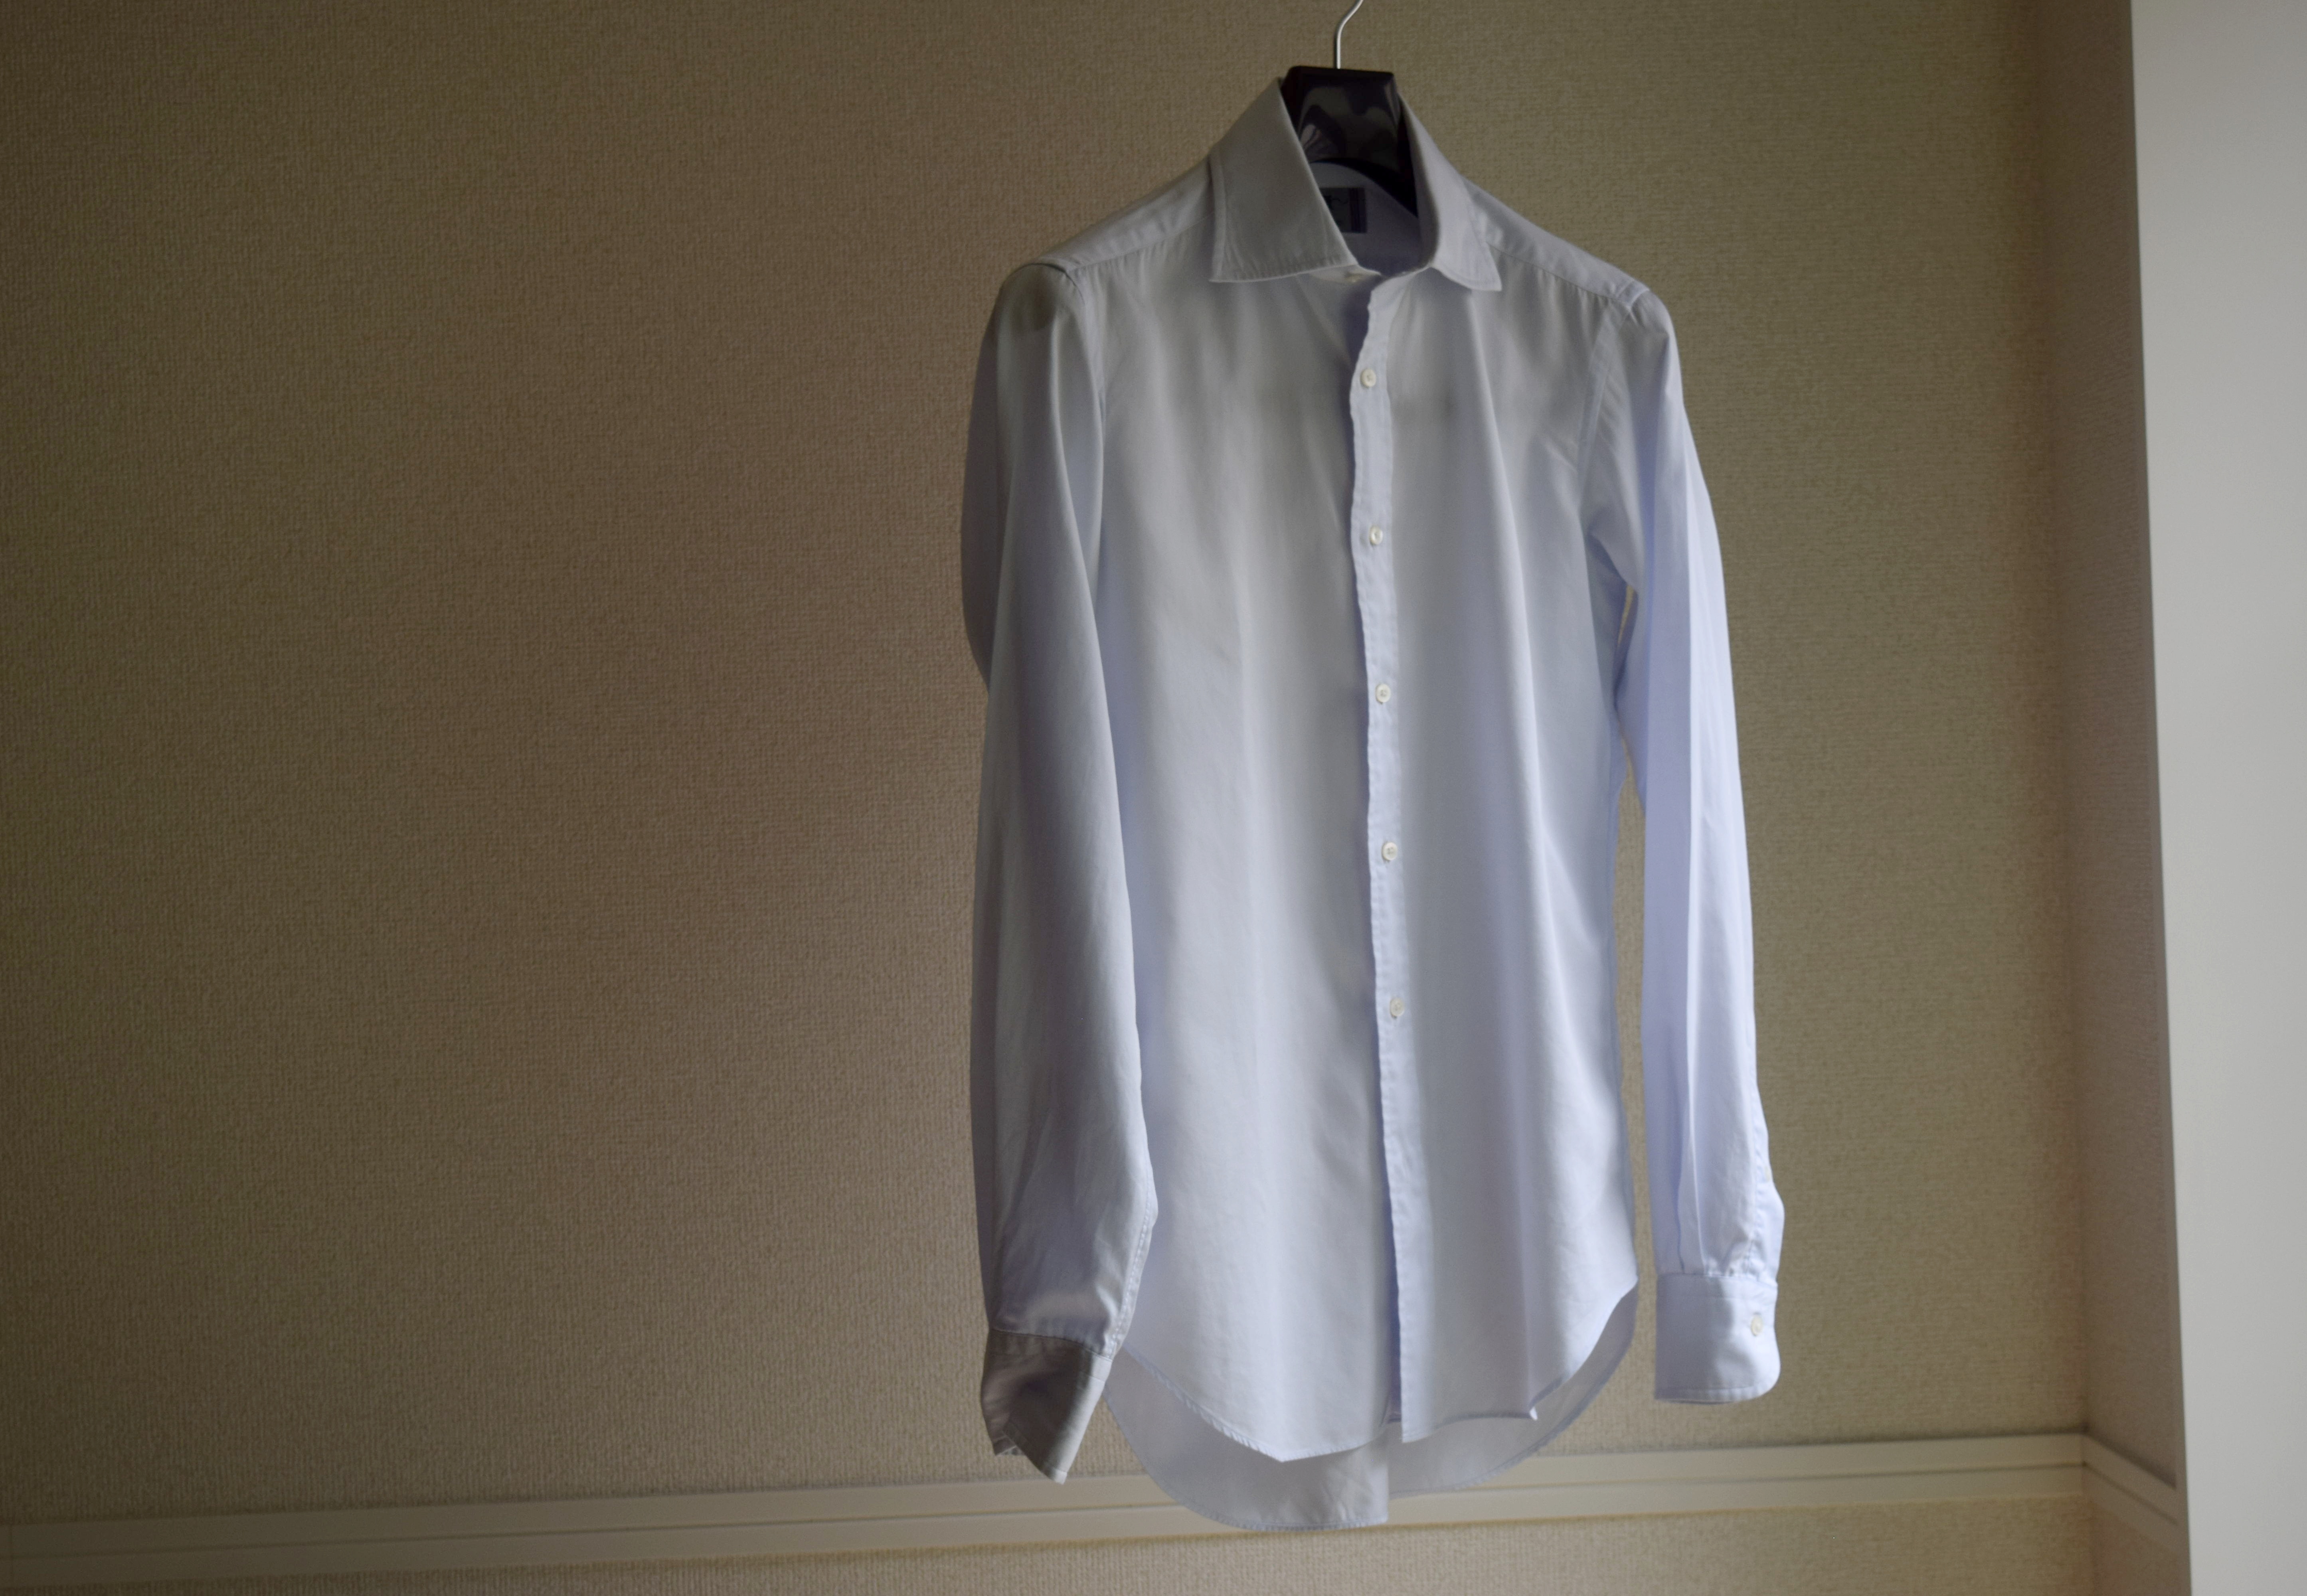 シャツno 178 鎌倉シャツの400番手シャツ パターンオーダー シャツと休む